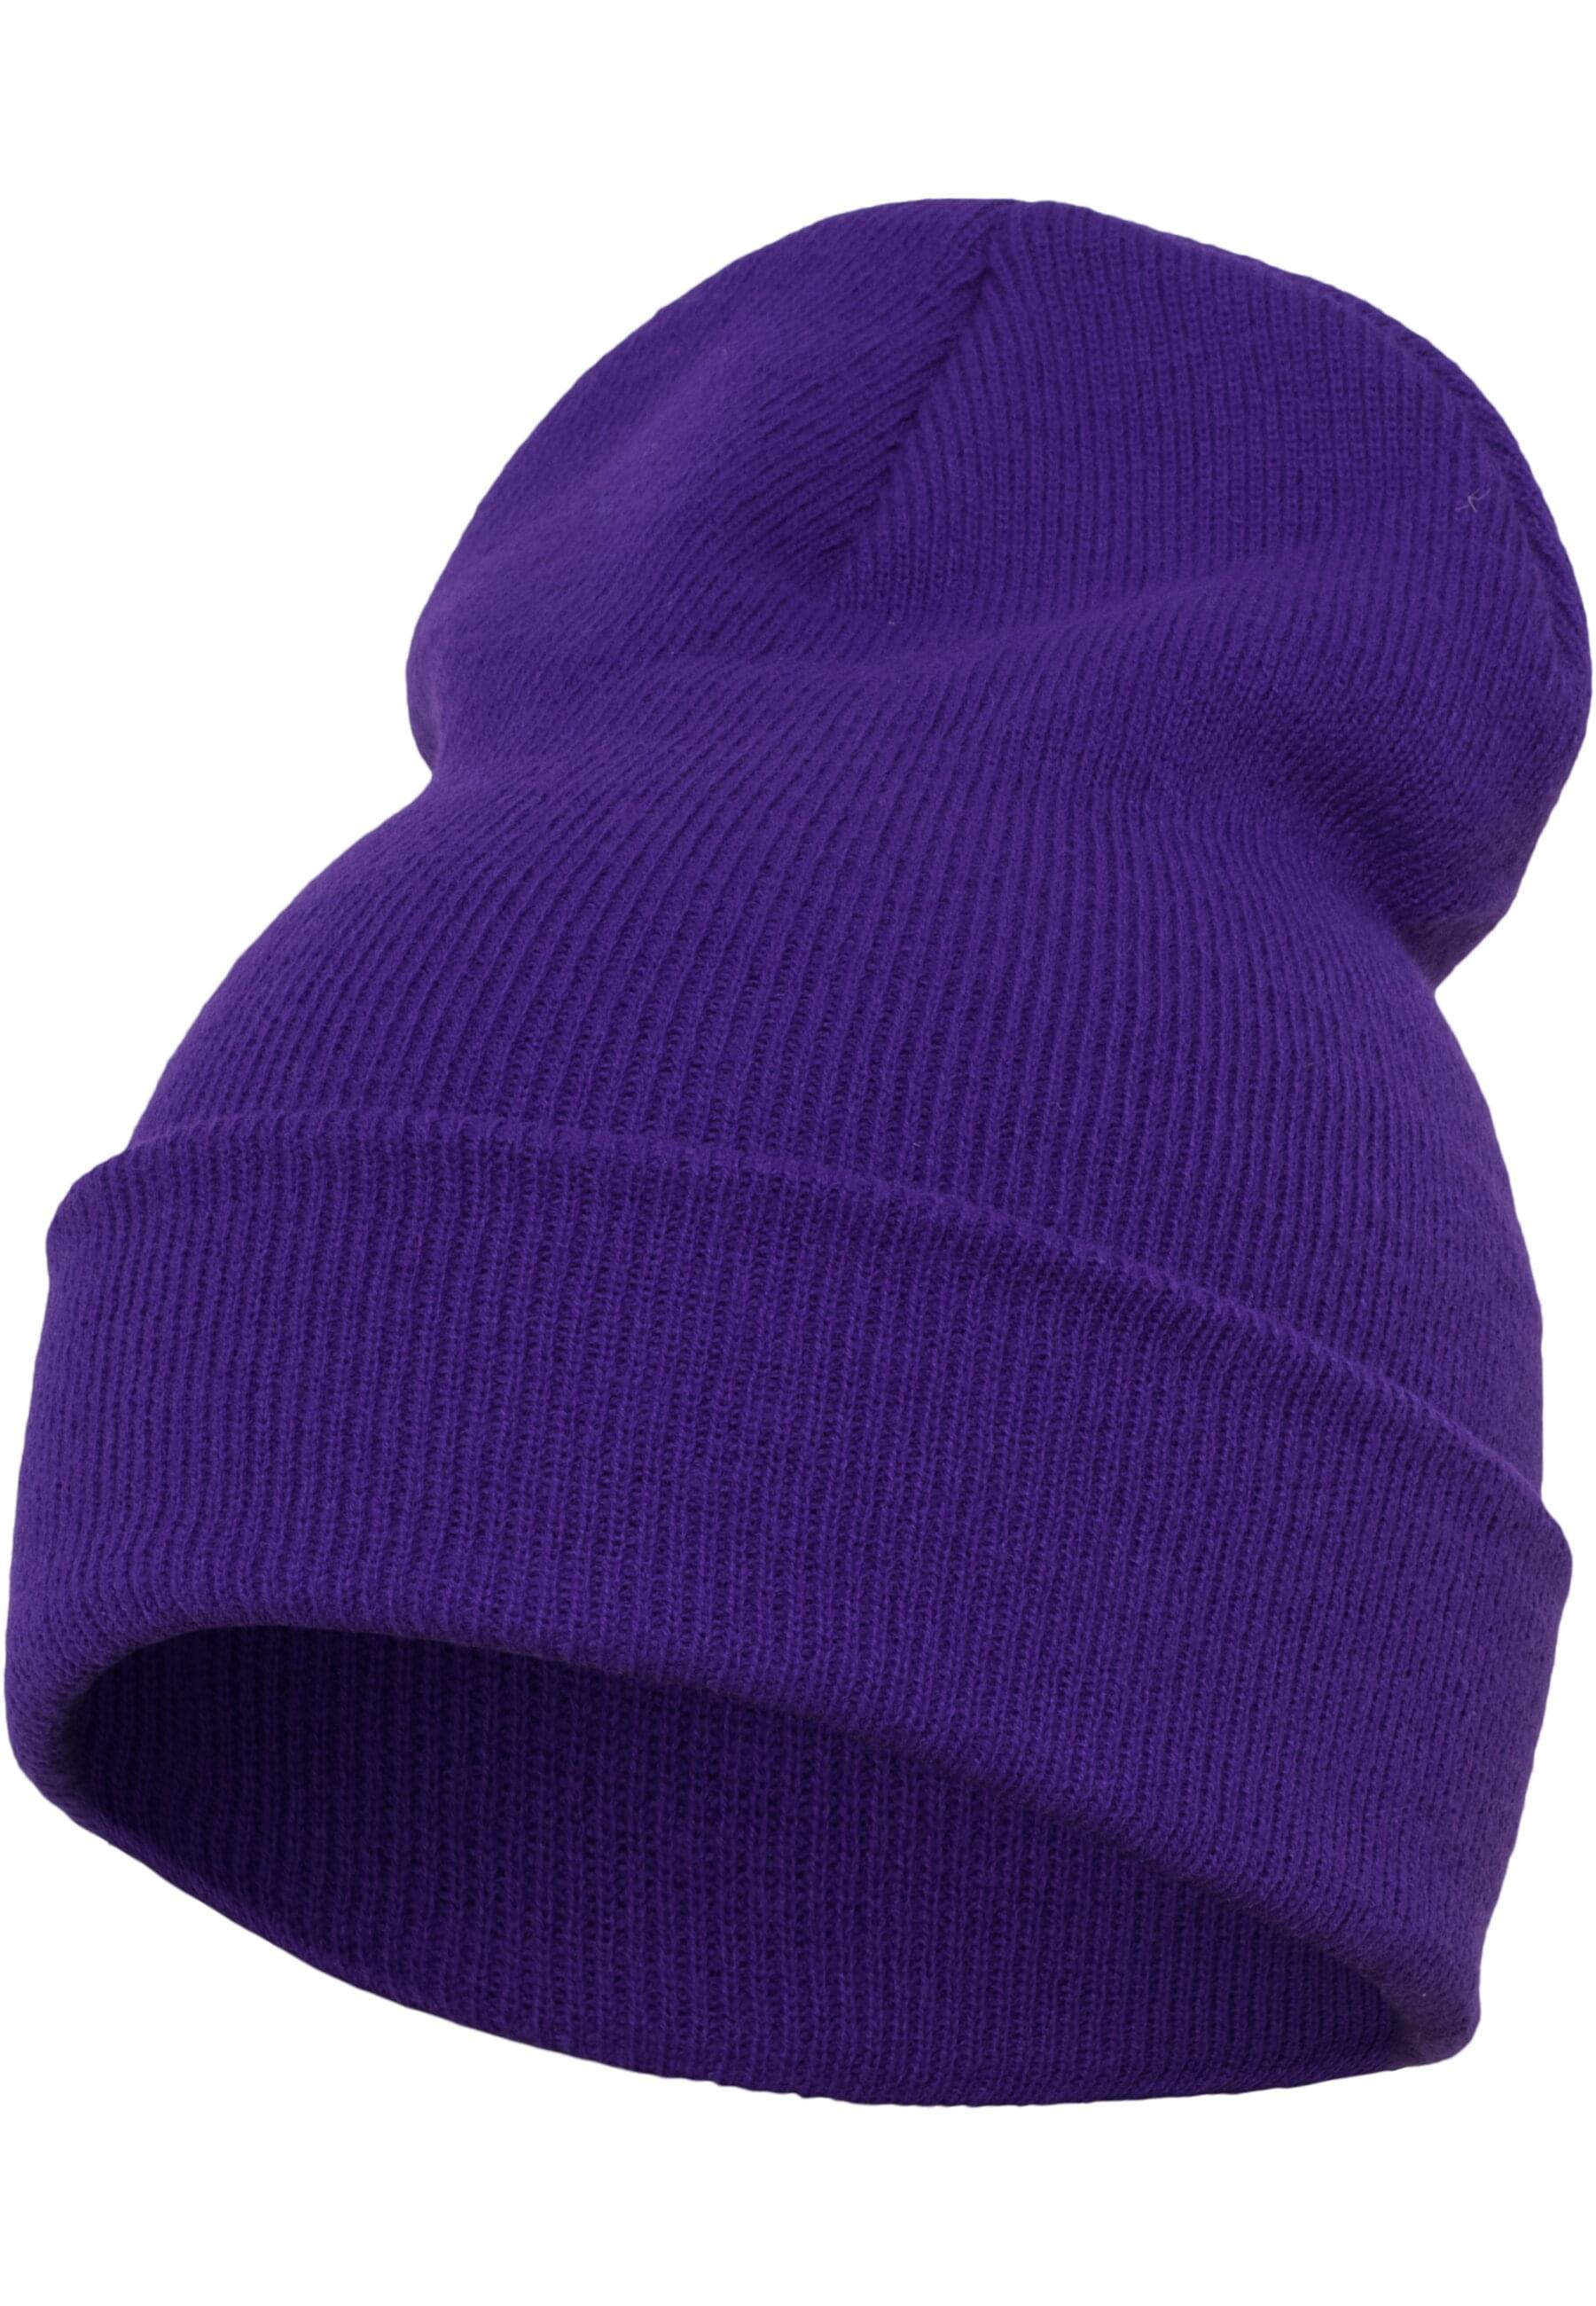 Кепка Flexfit, фиолетовый